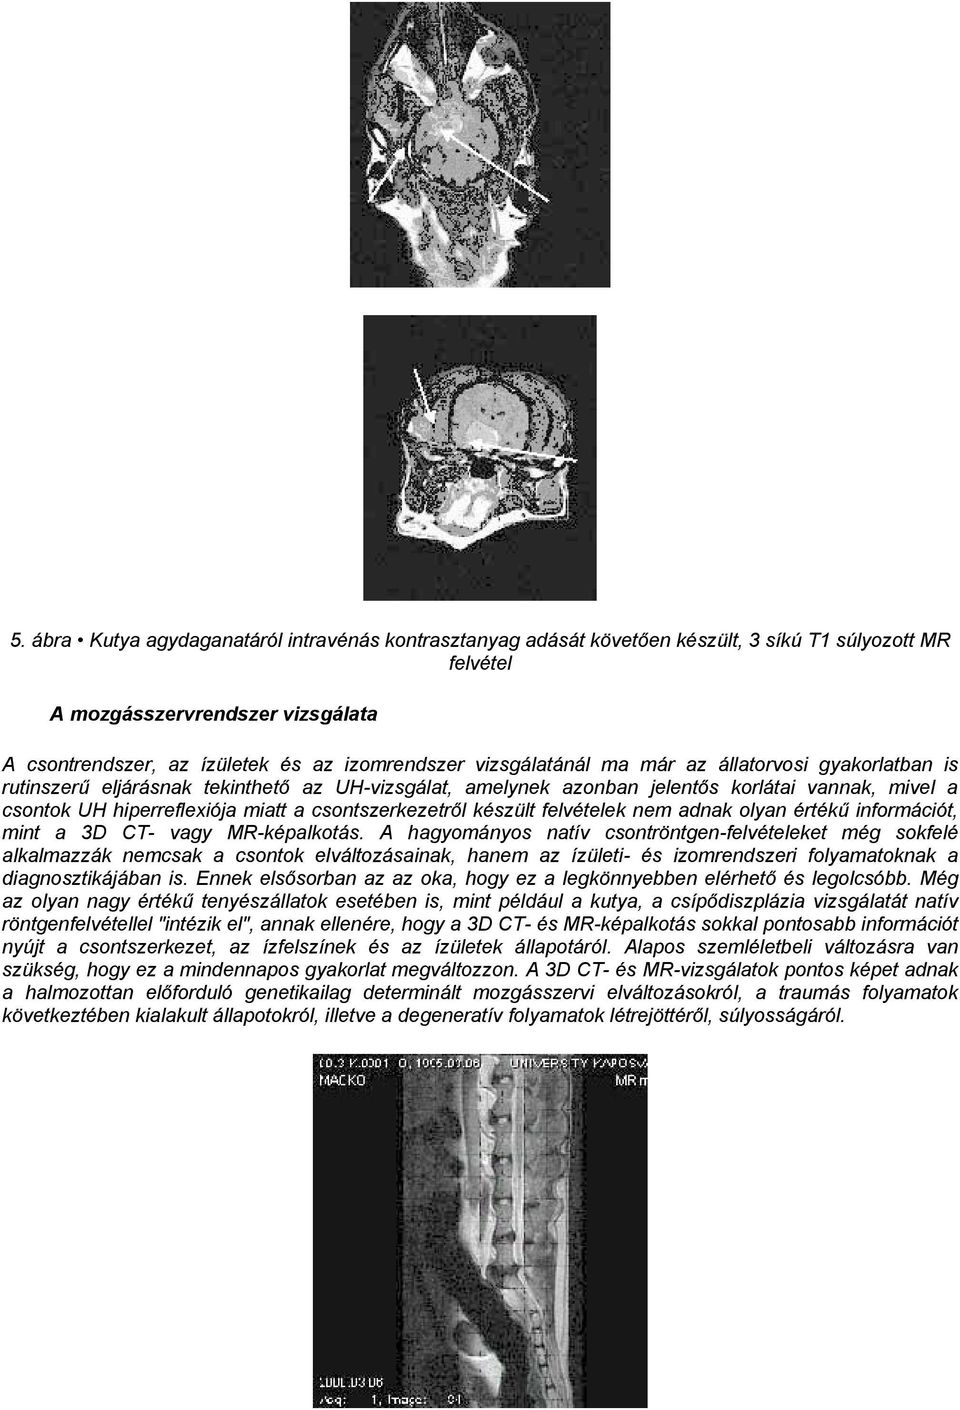 csontszerkezetről készült felvételek nem adnak olyan értékű információt, mint a 3D CT- vagy MR-képalkotás.